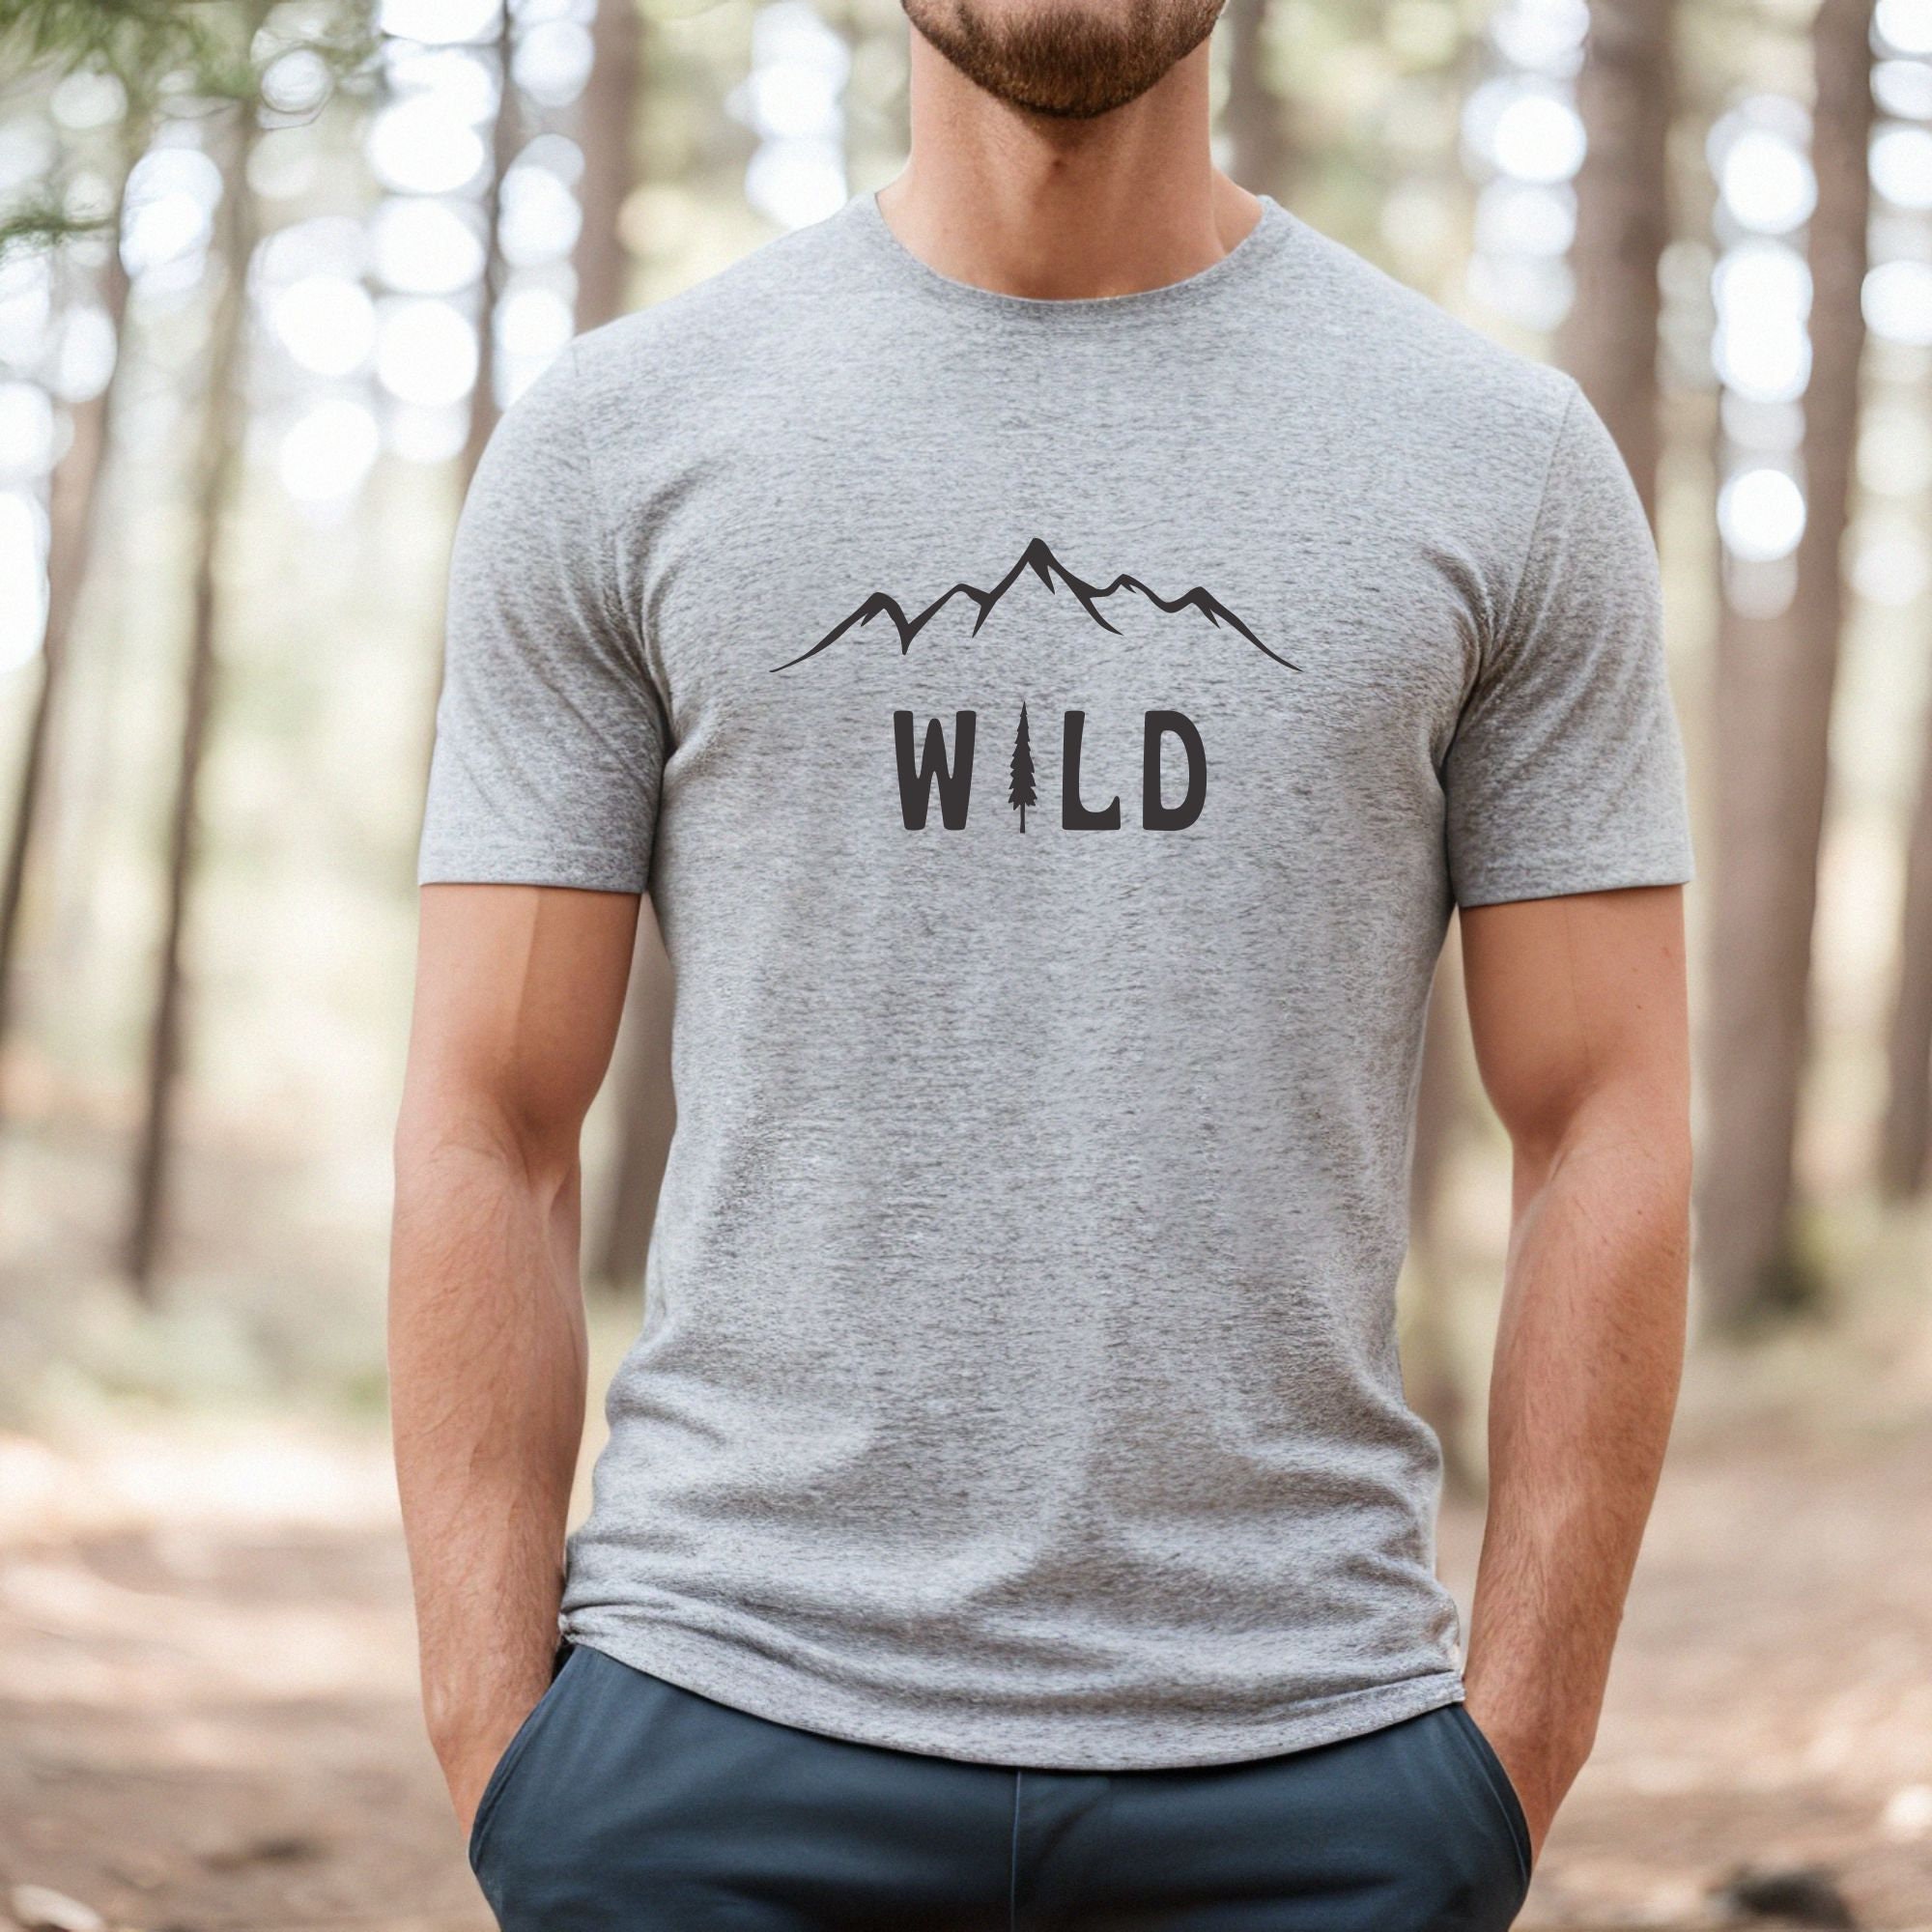 Outdoor Shirt for Men, Hiking Shirt, Camping Shirt, Wild Tshirt